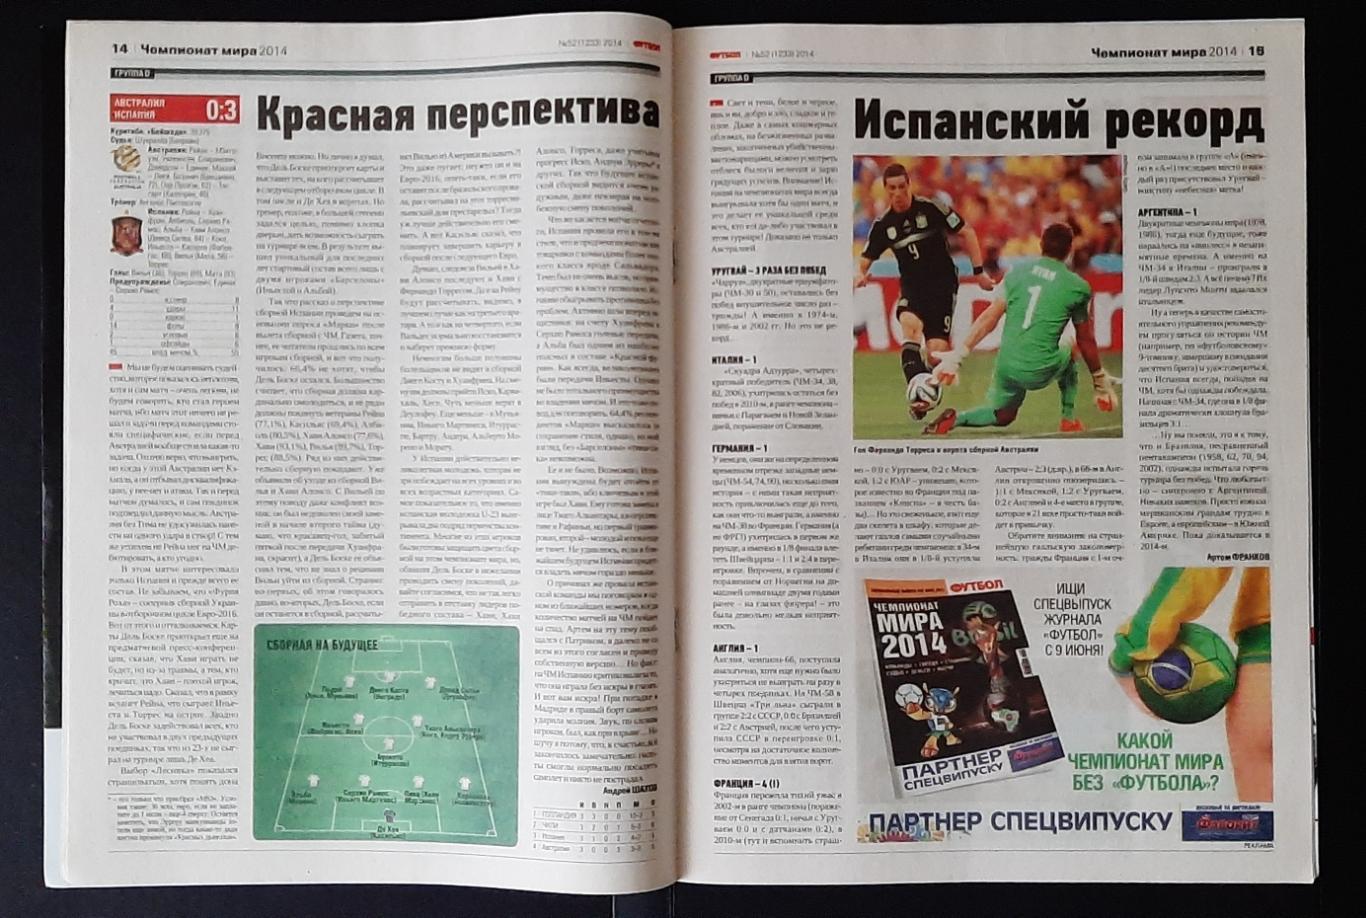 Журнал Футбол #52 2014 матчі Чемпіонату світу 2